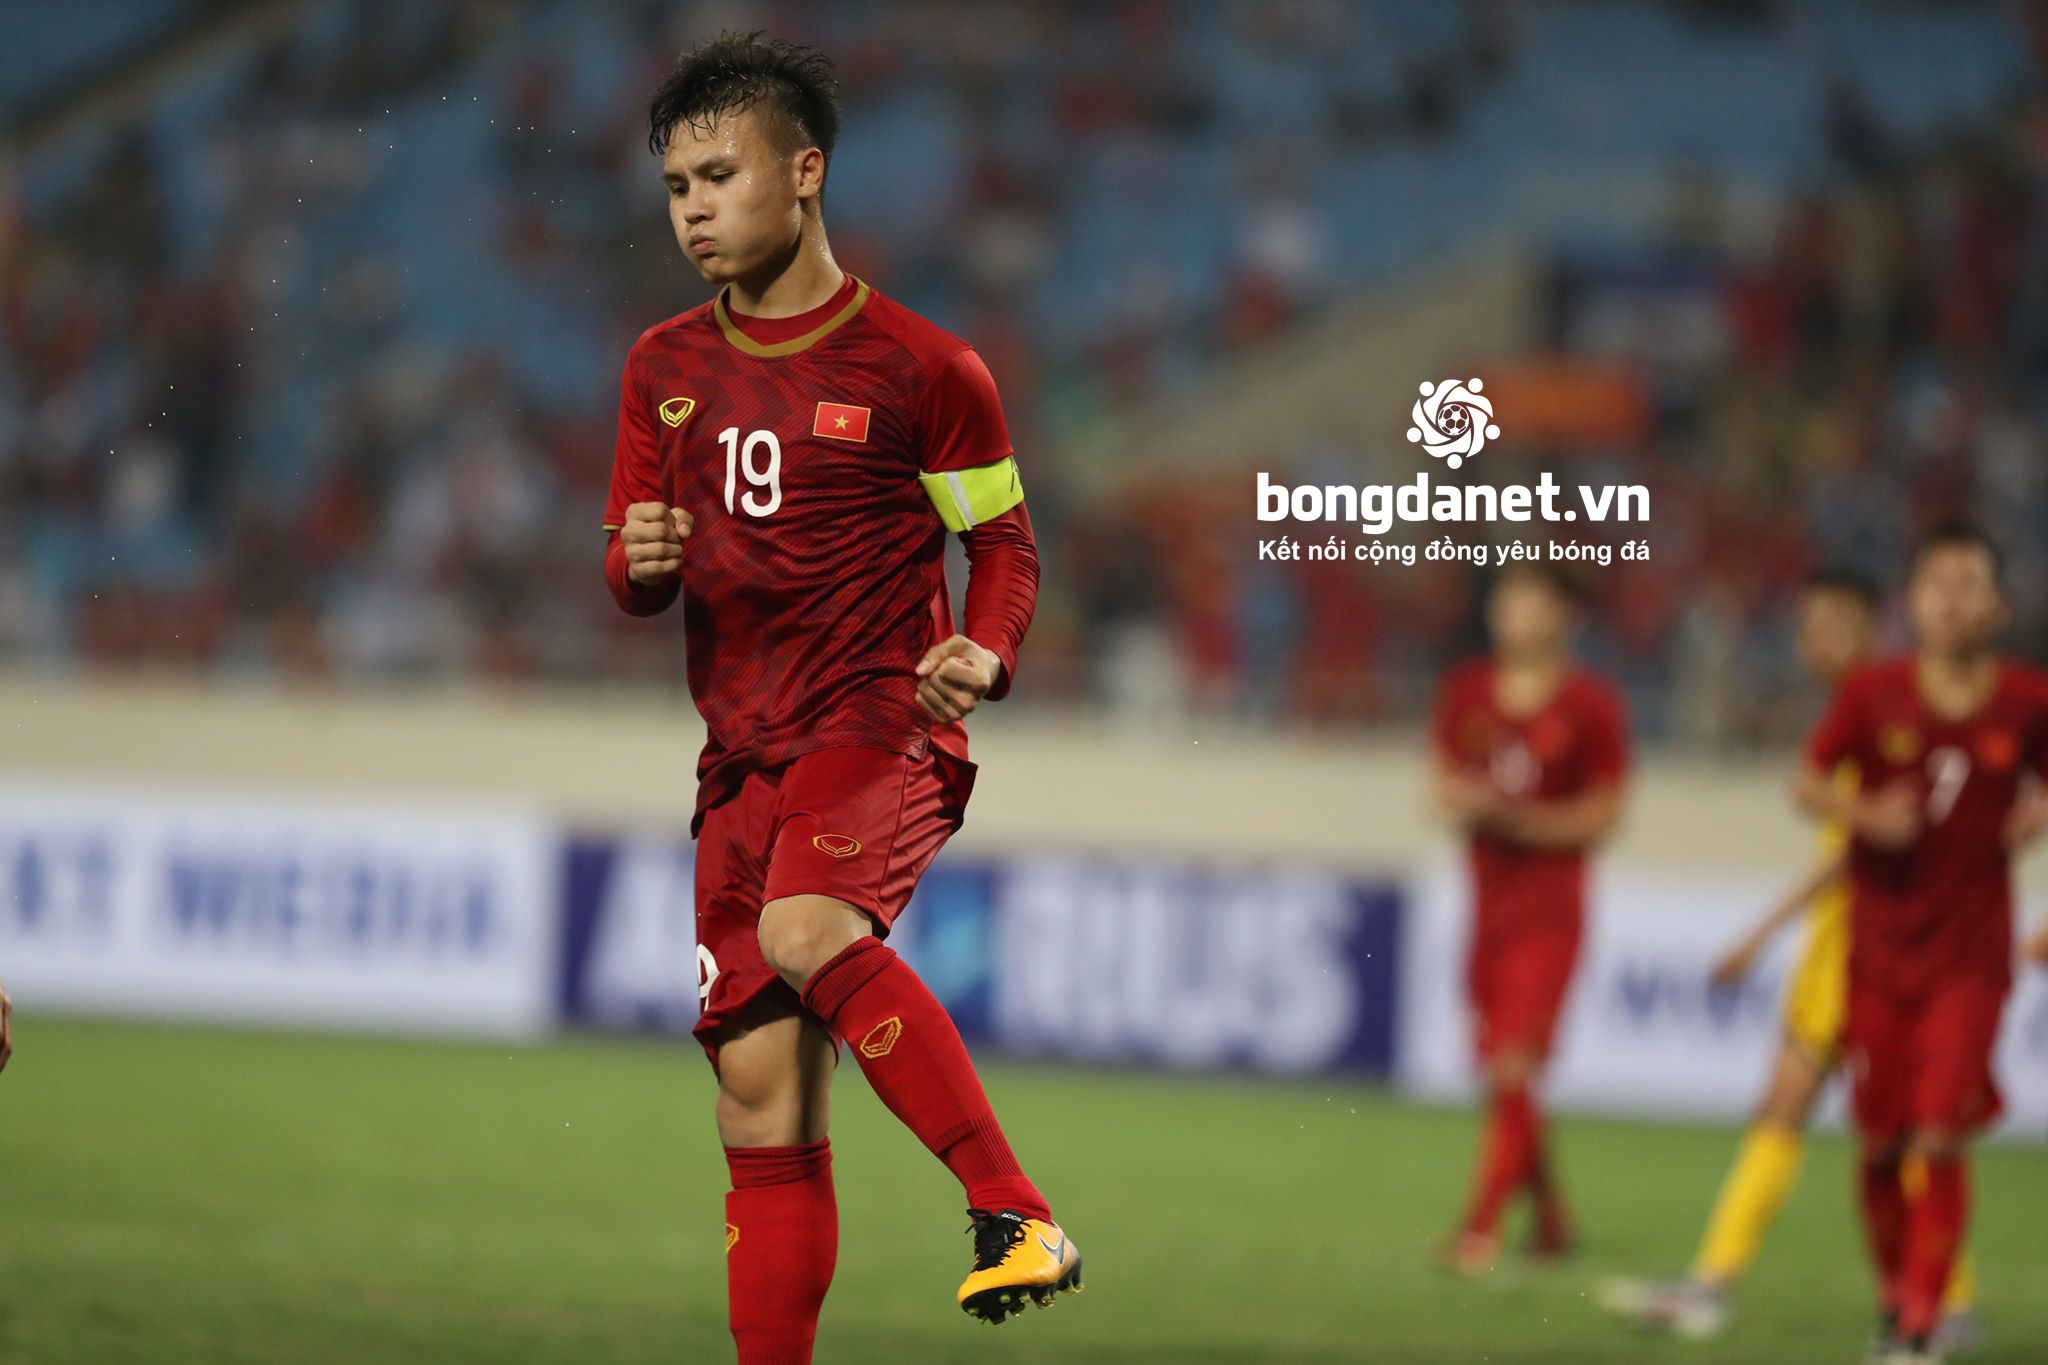 U23 Việt Nam vs U23 Myanmar: Quang Hải 'lỡ hẹn' vì...quá đẳng cấp